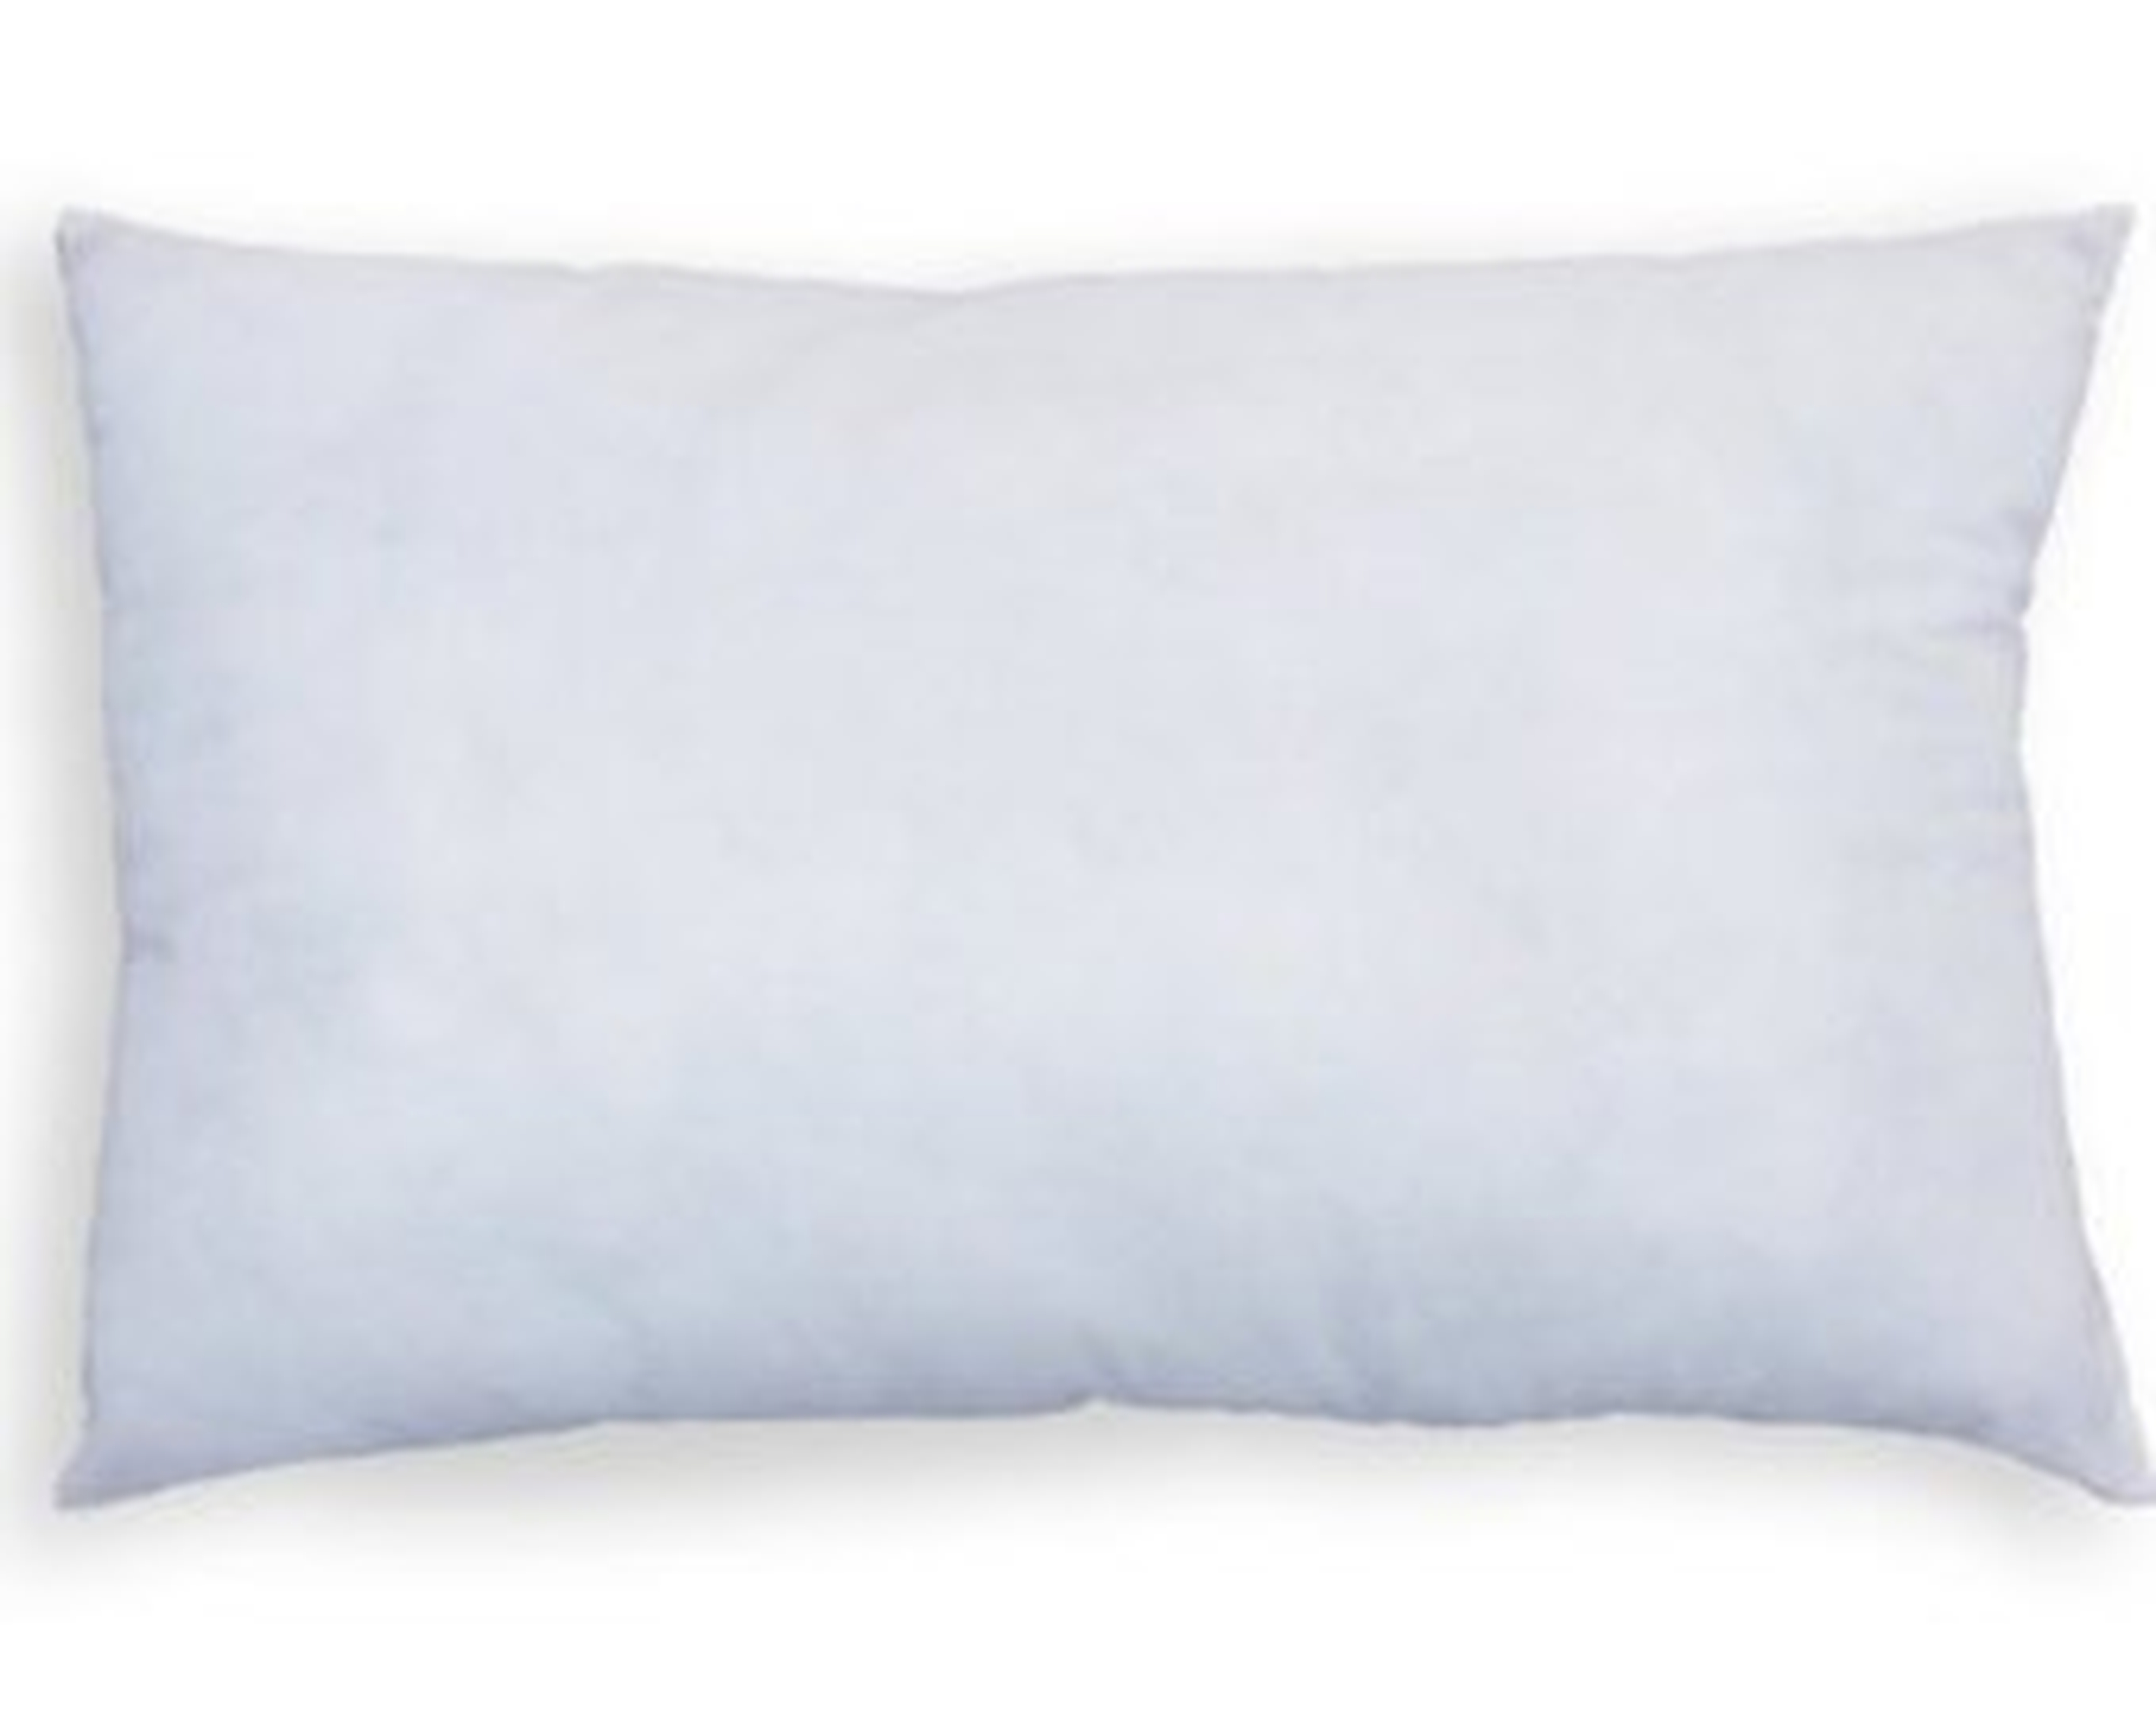 Pillow Insert 10" x 18" Feather Down - Arianna Belle